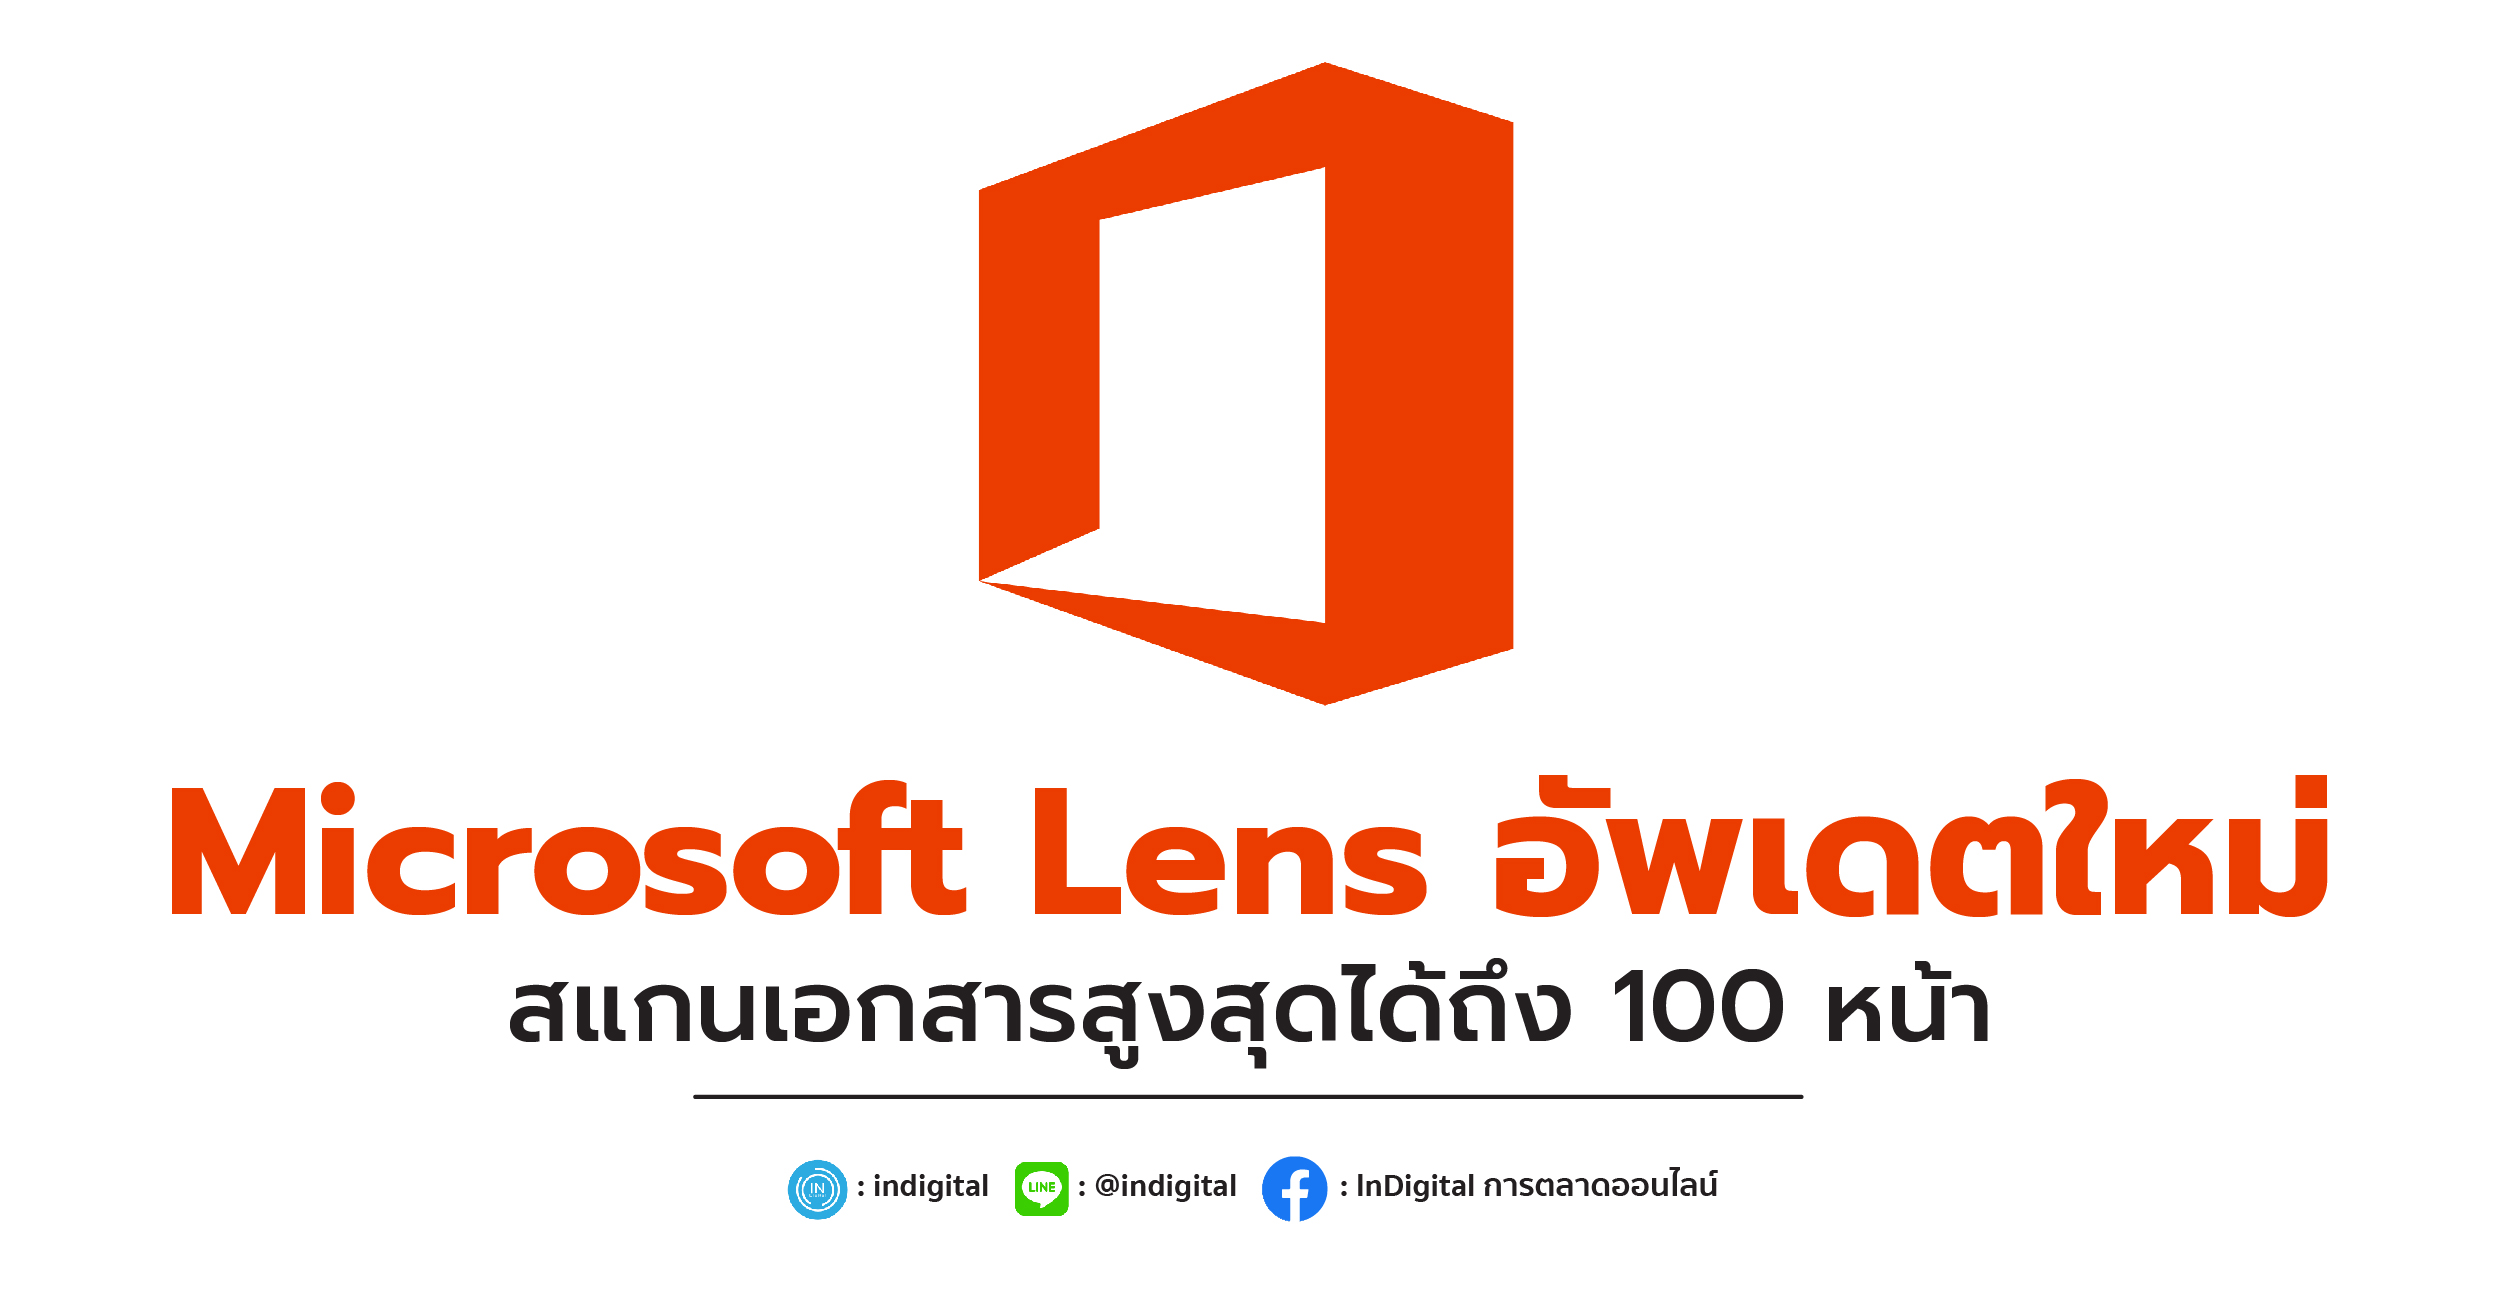 Microsoft Lens อัพเดตใหม่ สแกนเอกสารสูงสุดได้ถึง 100 หน้า